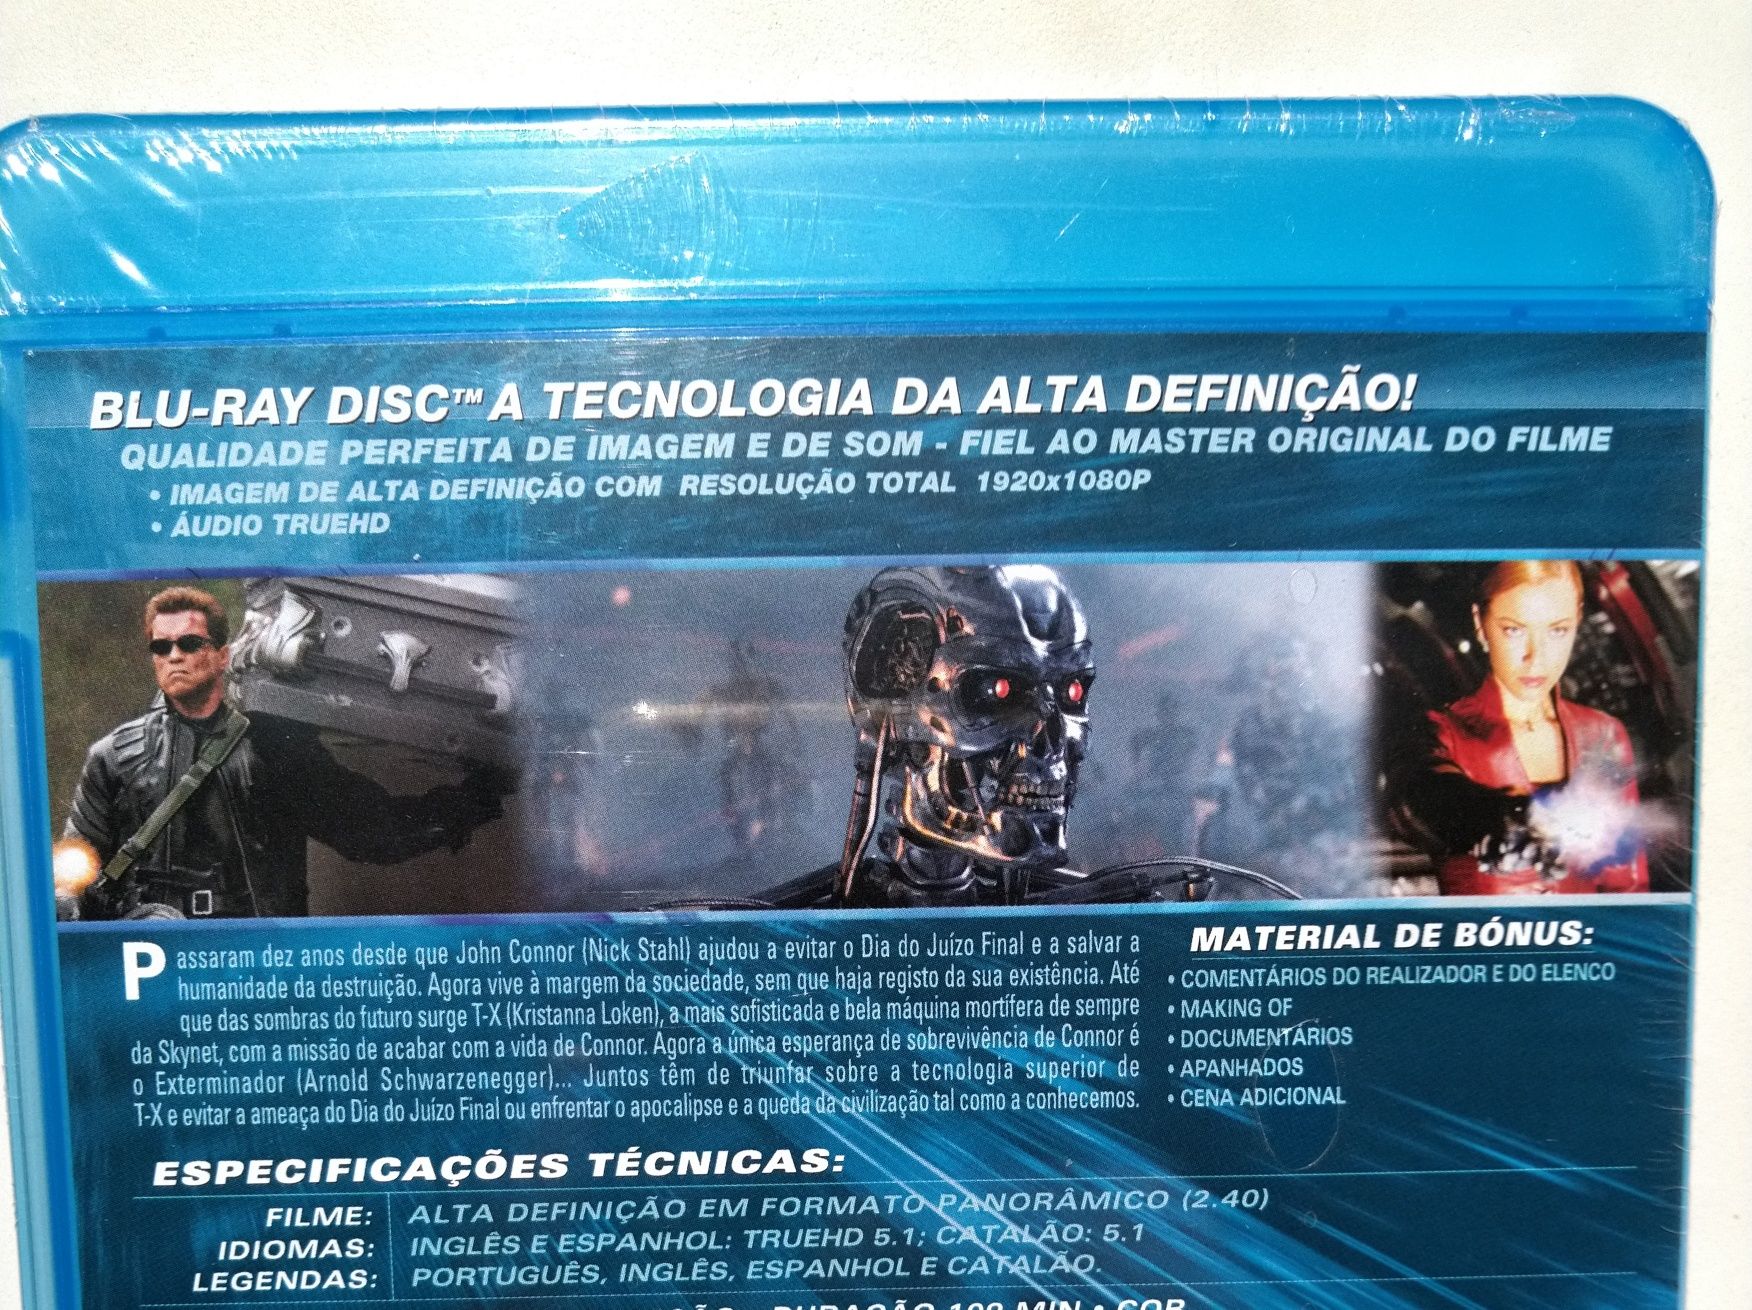 Exterminador Implacável 3 : Ascensão das Máquinas - novo - blu-ray